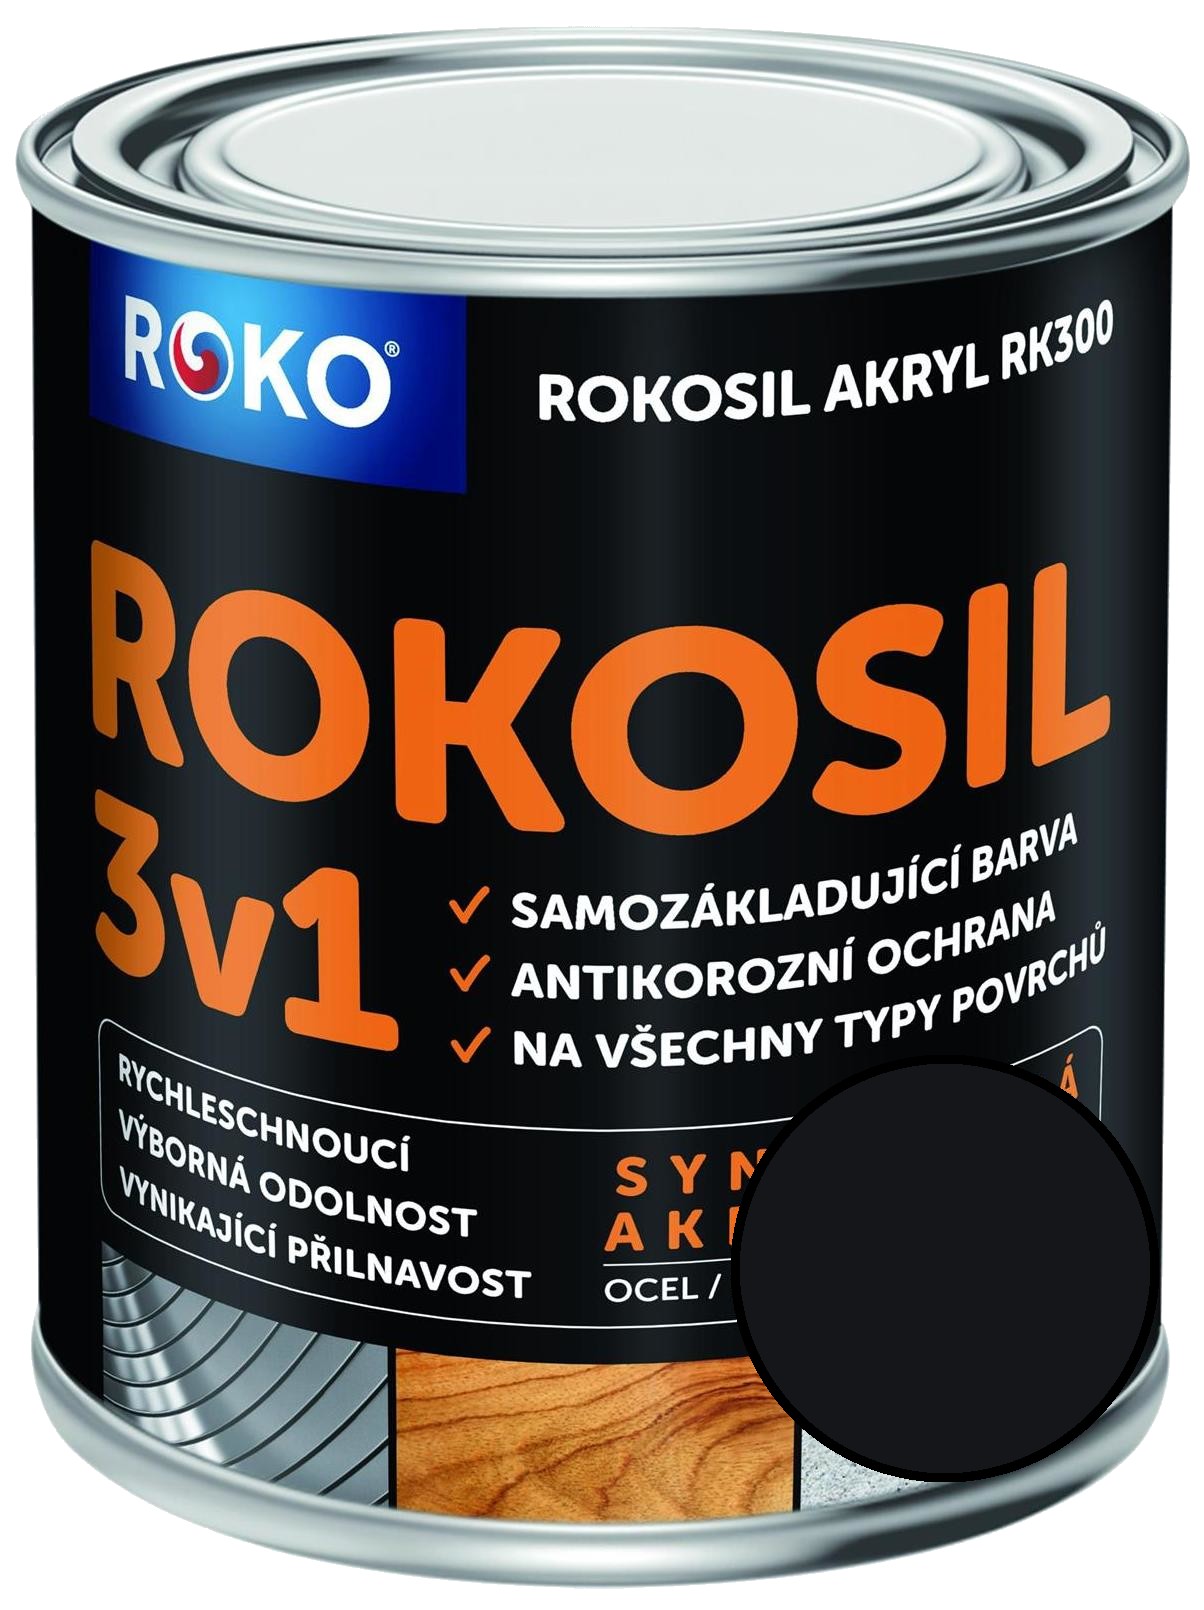 Barva samozákladující Rokosil akryl 3v1 RK 300 černá 0